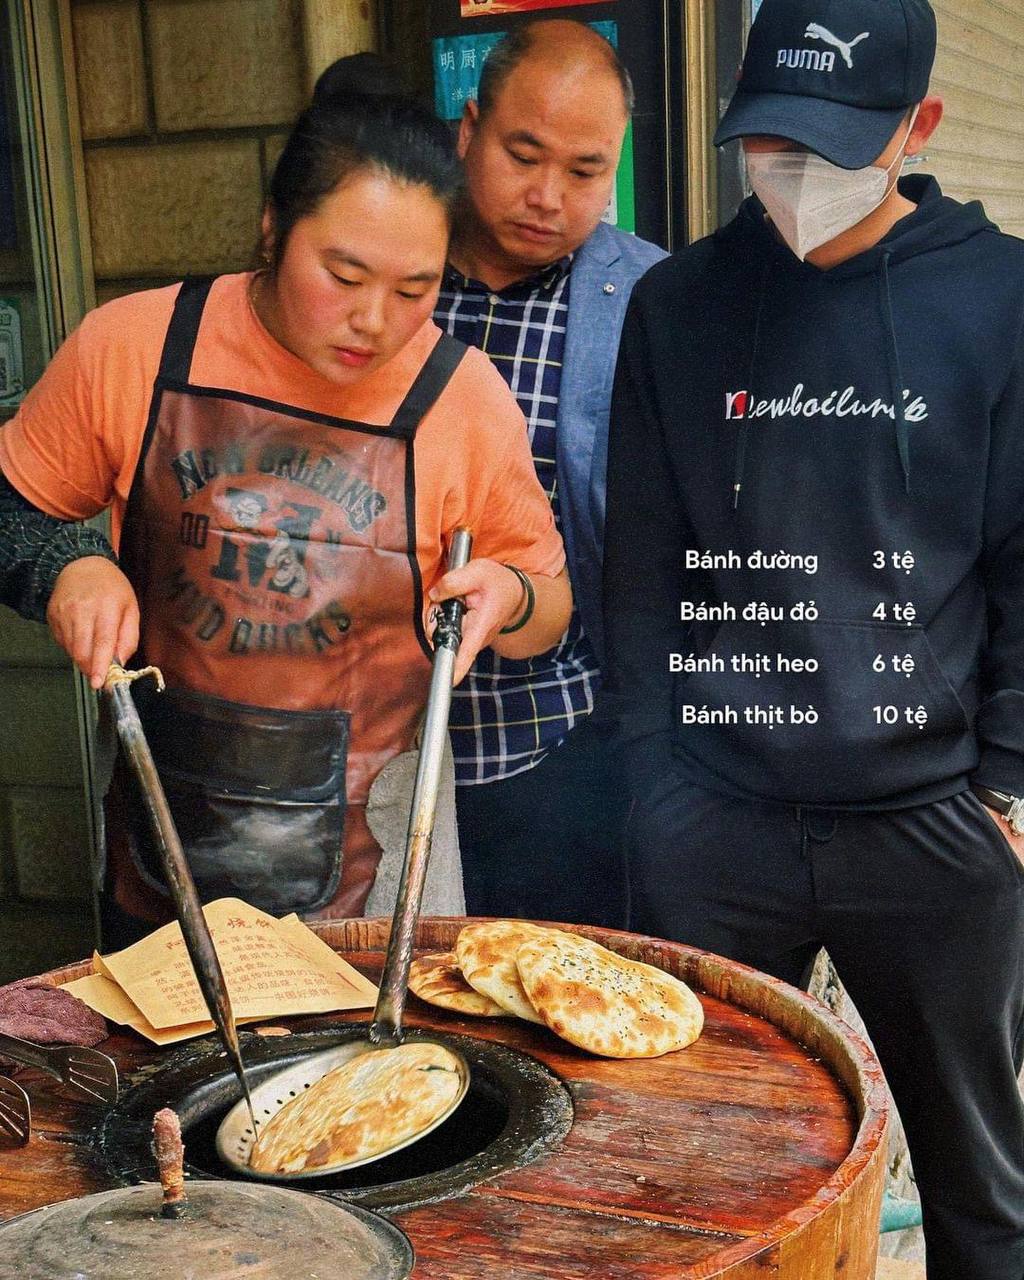 Ẩm thực Hà Khẩu khiến du khách Việt “nghiện toàn tập”: tên thì nghe rồi nhưng mẹo ăn ngon chưa chắc bạn đã biết đâu- Ảnh 6.